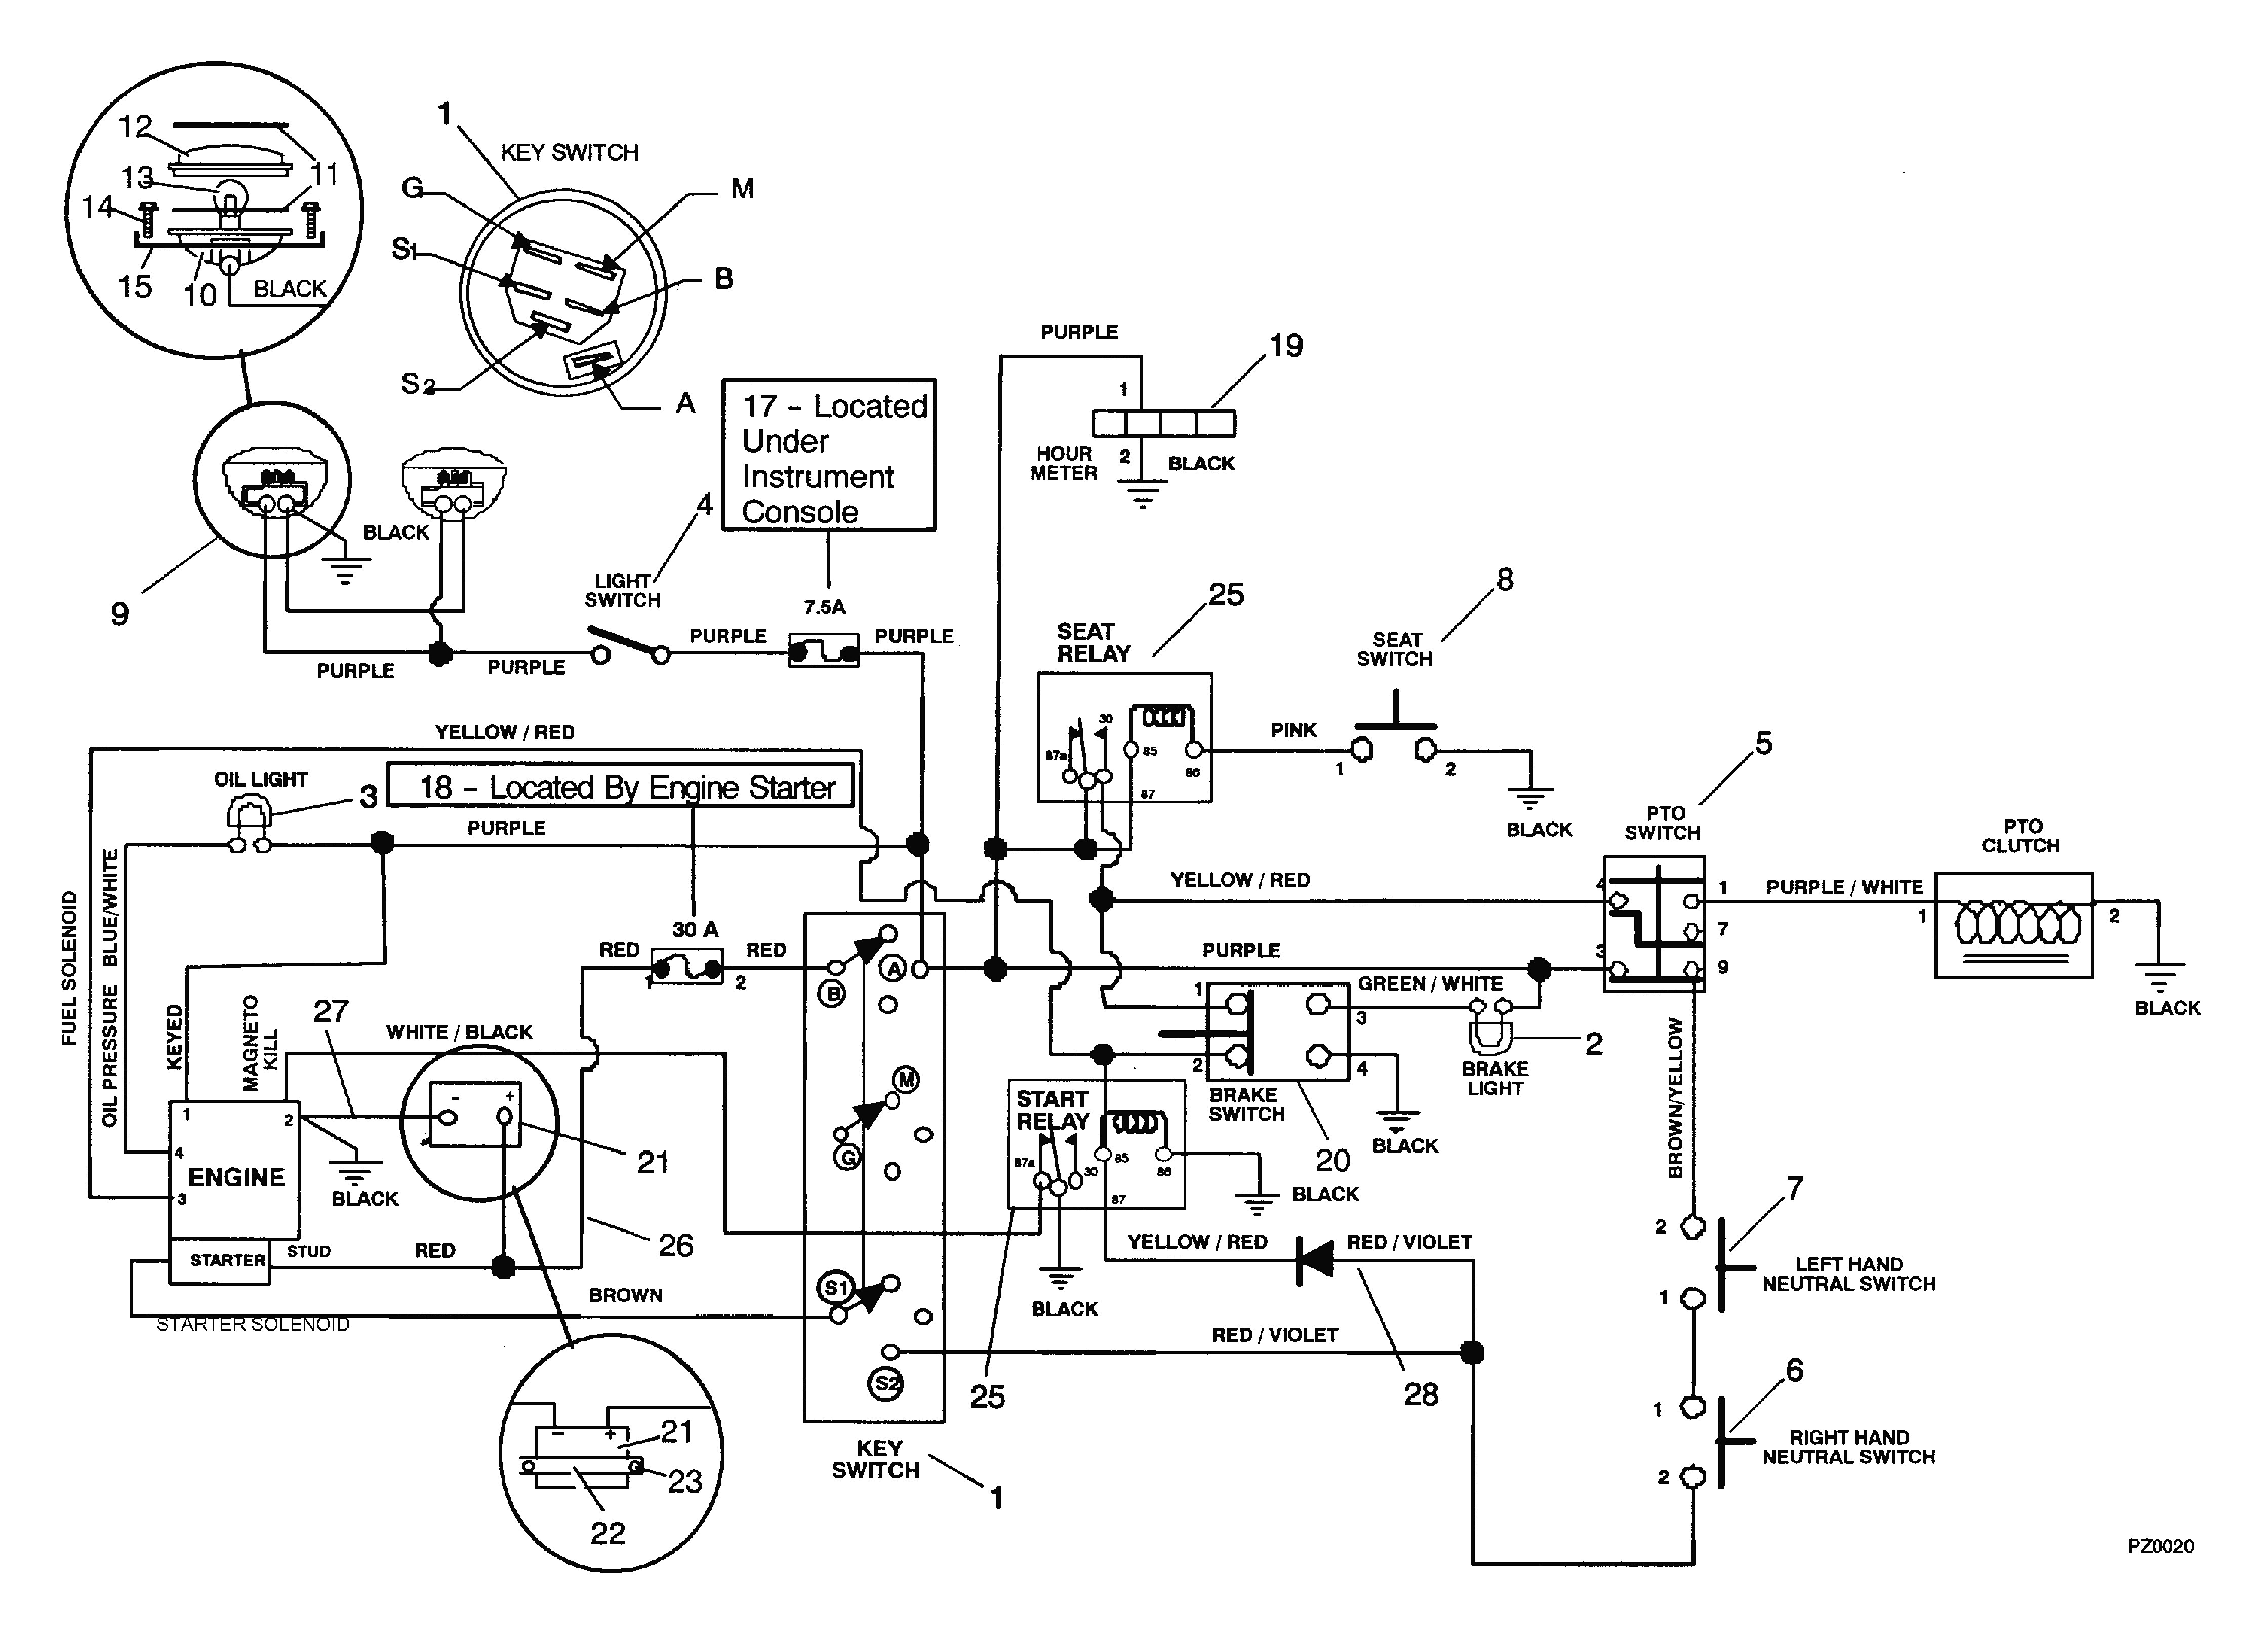 orthman wiring diagram wiring diagram world orthman wiring diagram